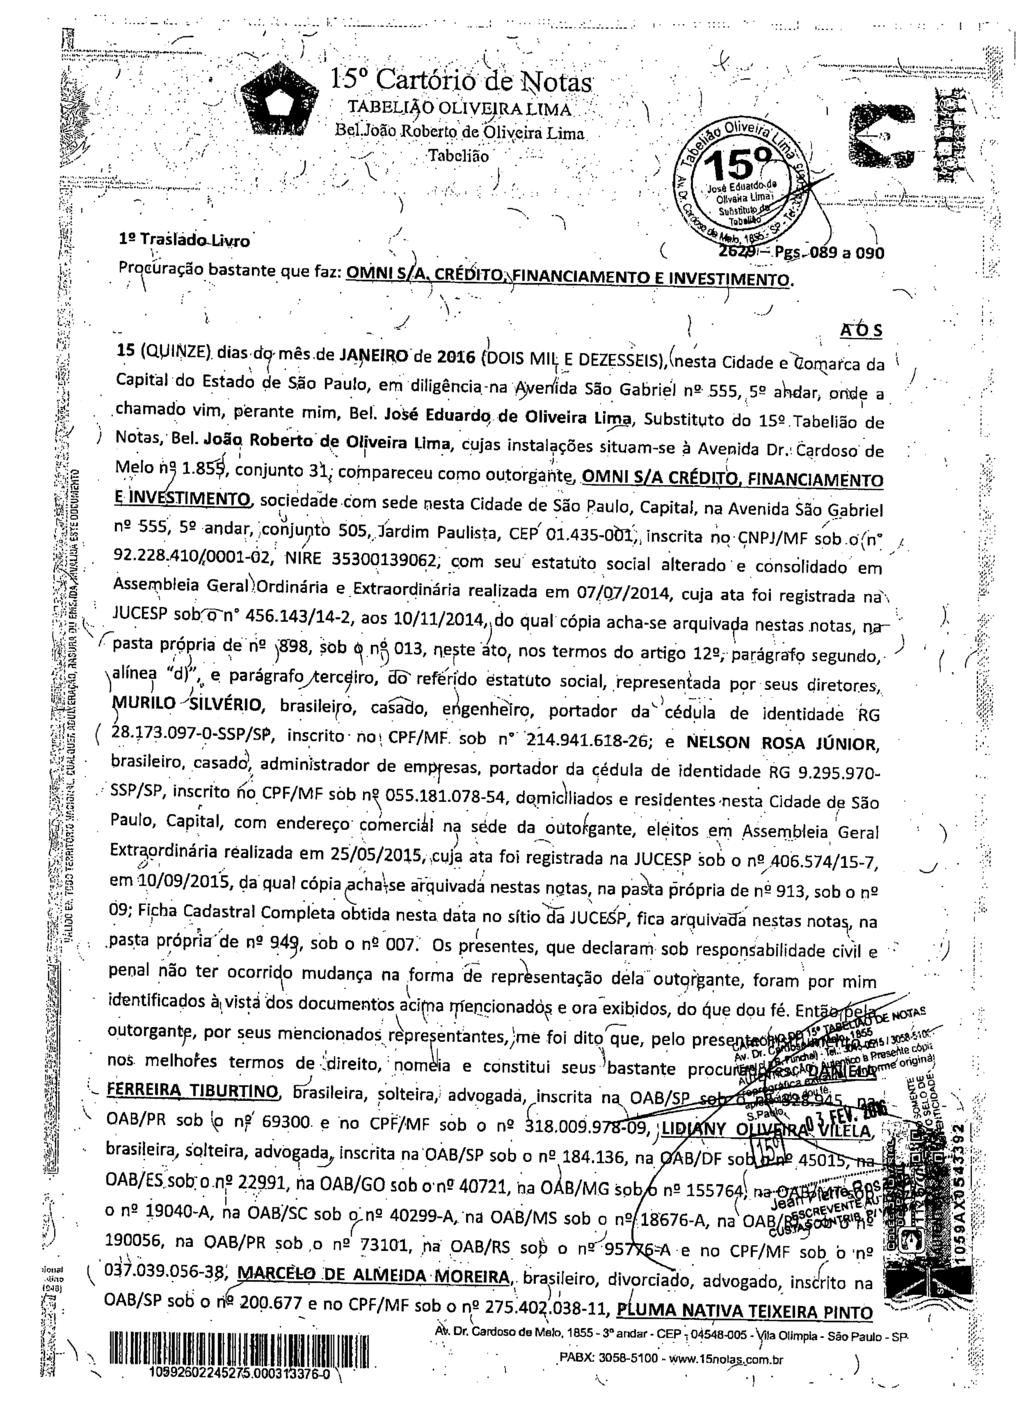 fls. 111 Este documento é cópia do original, assinado digitalmente por MARCOS ANTONIO AVILA, liberado nos autos em 22/08/2017 às 15:15.